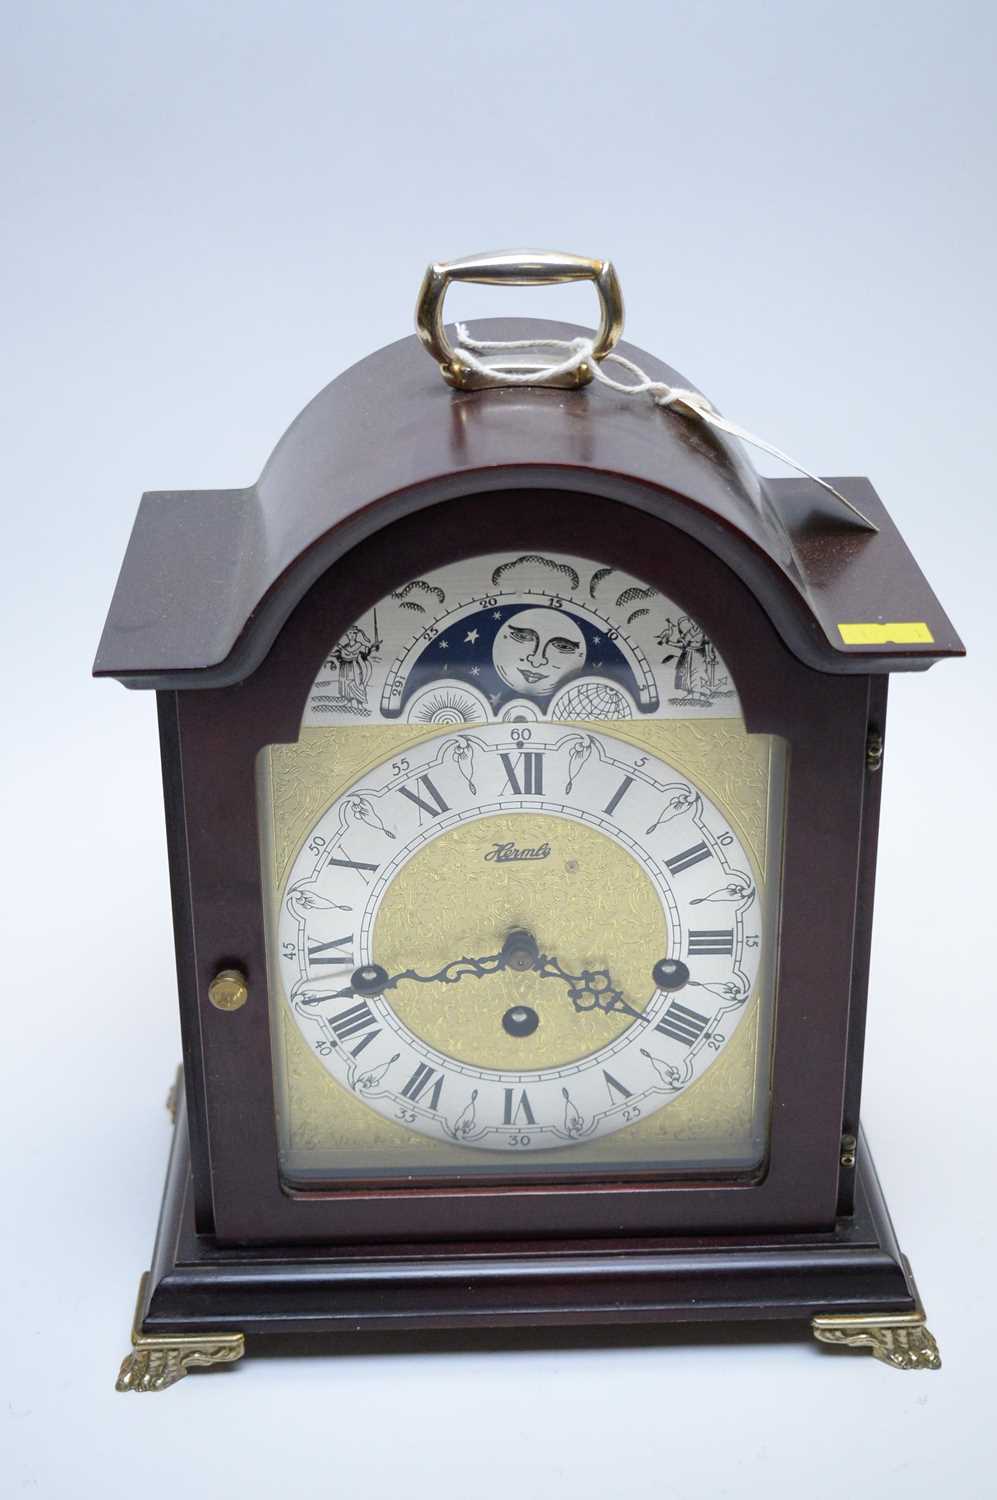 Modern Hermel mantel clock.